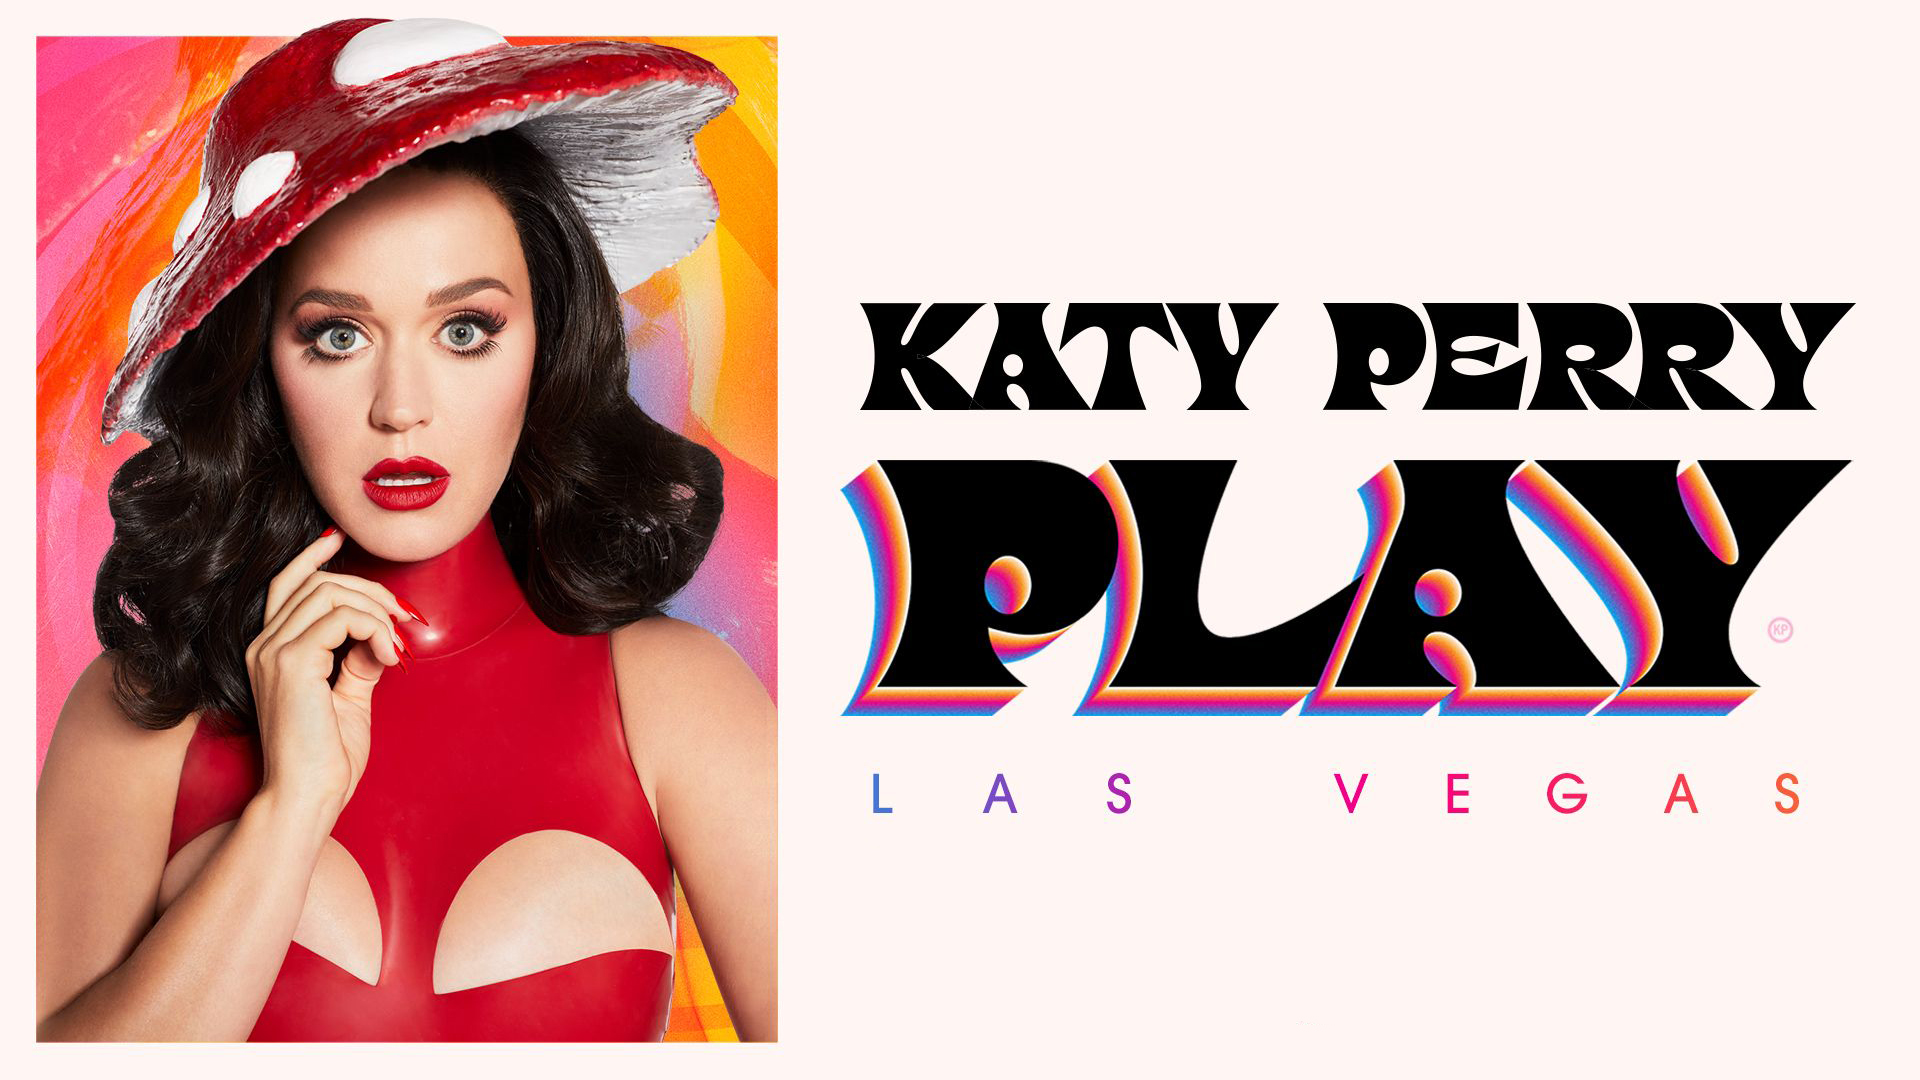 Katy Perry divulga informações sobre “Play”, a sua nova residência em Las Vegas